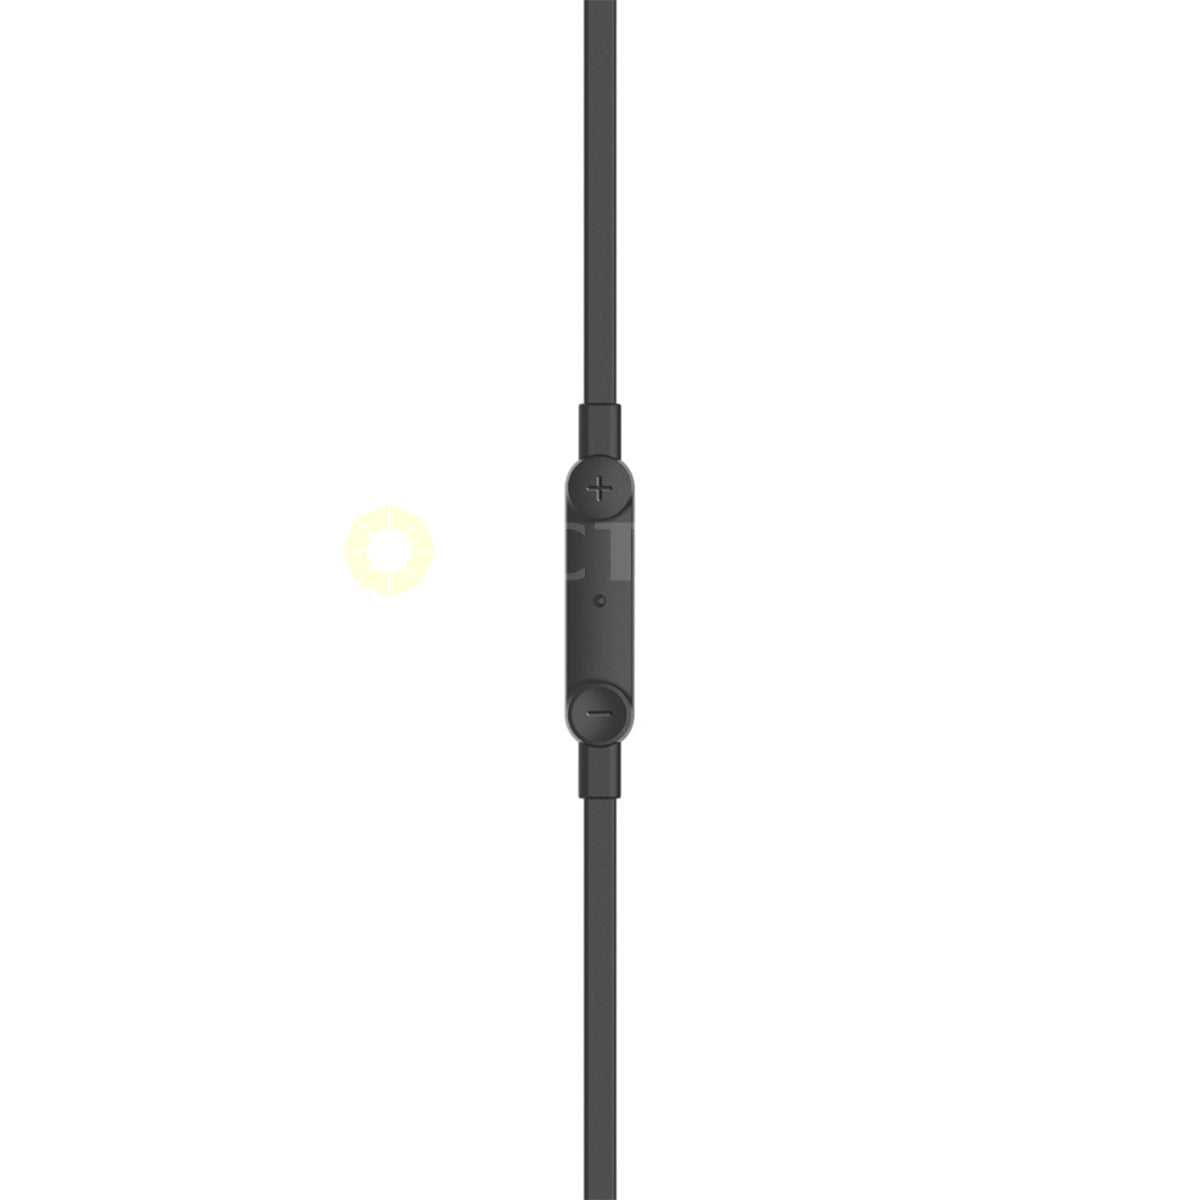 BELKIN USB-C IN-EAR EARPHONE WITH MIC WIRED